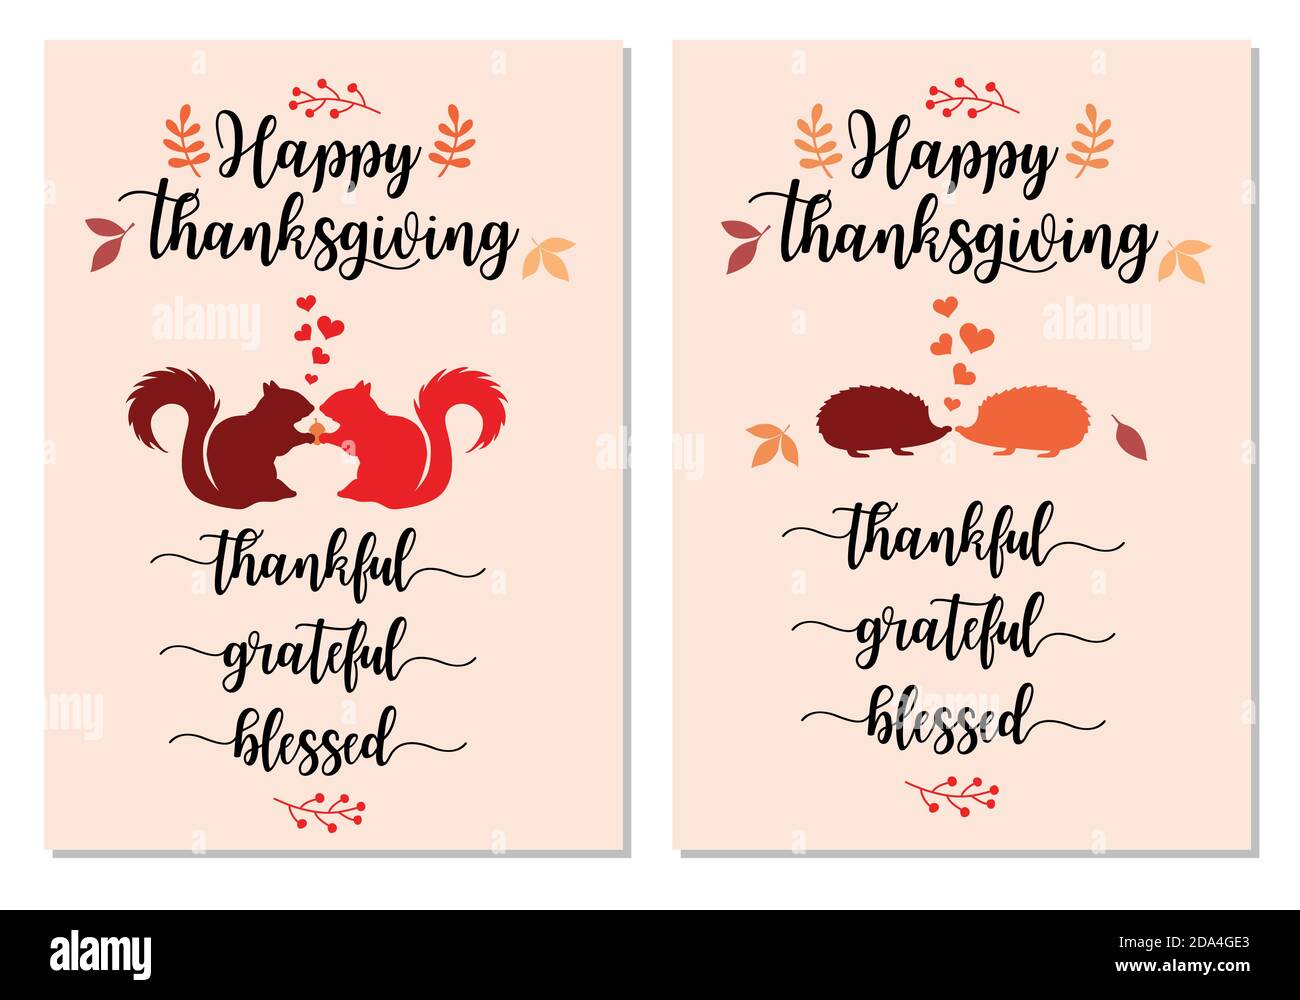 Insieme di carte di ringraziamento con scoiattoli e ricci carini, foglie d'autunno che cadono, illustrazione vettoriale Illustrazione Vettoriale